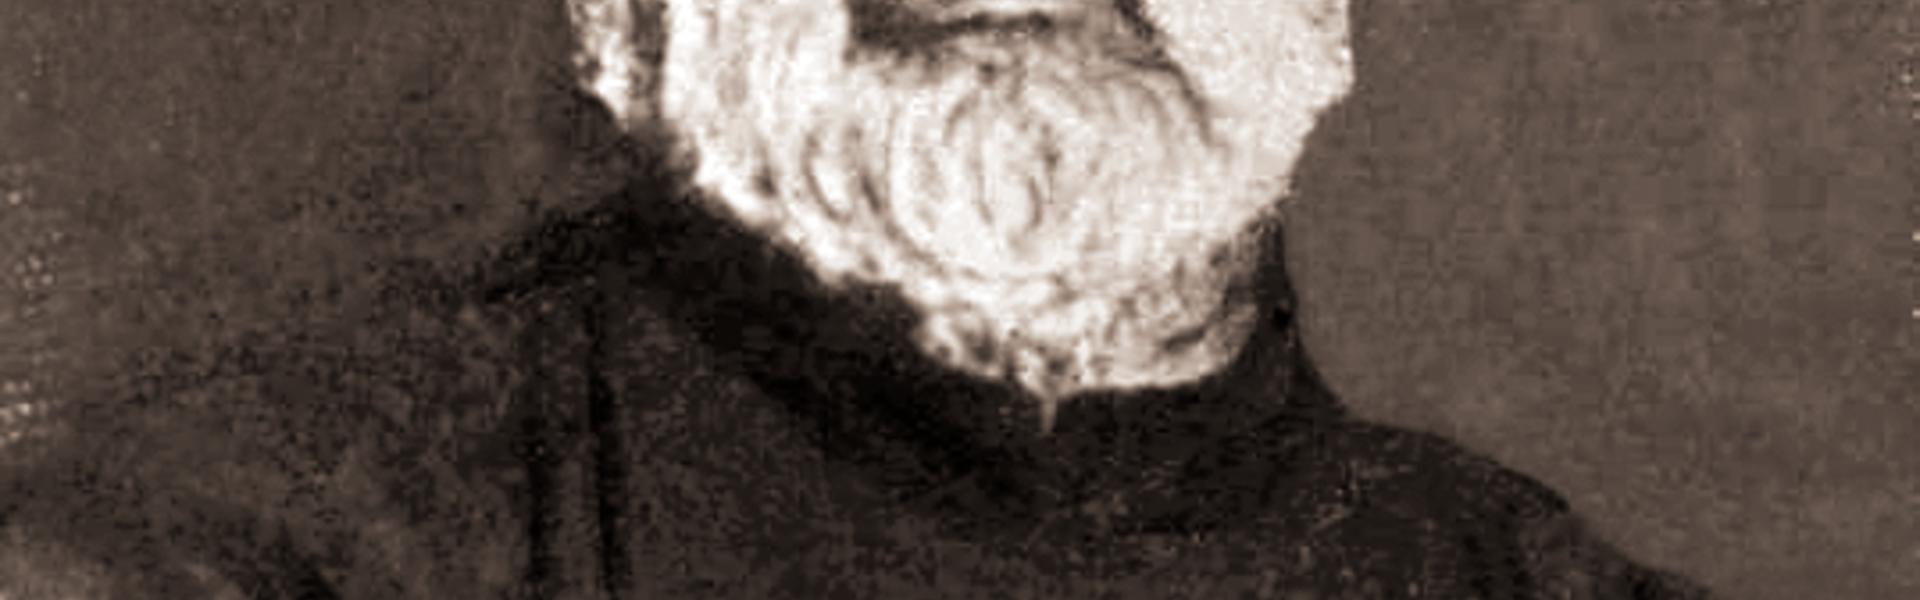 Obraz przedstawiający wizerunek św. Brata Alberta